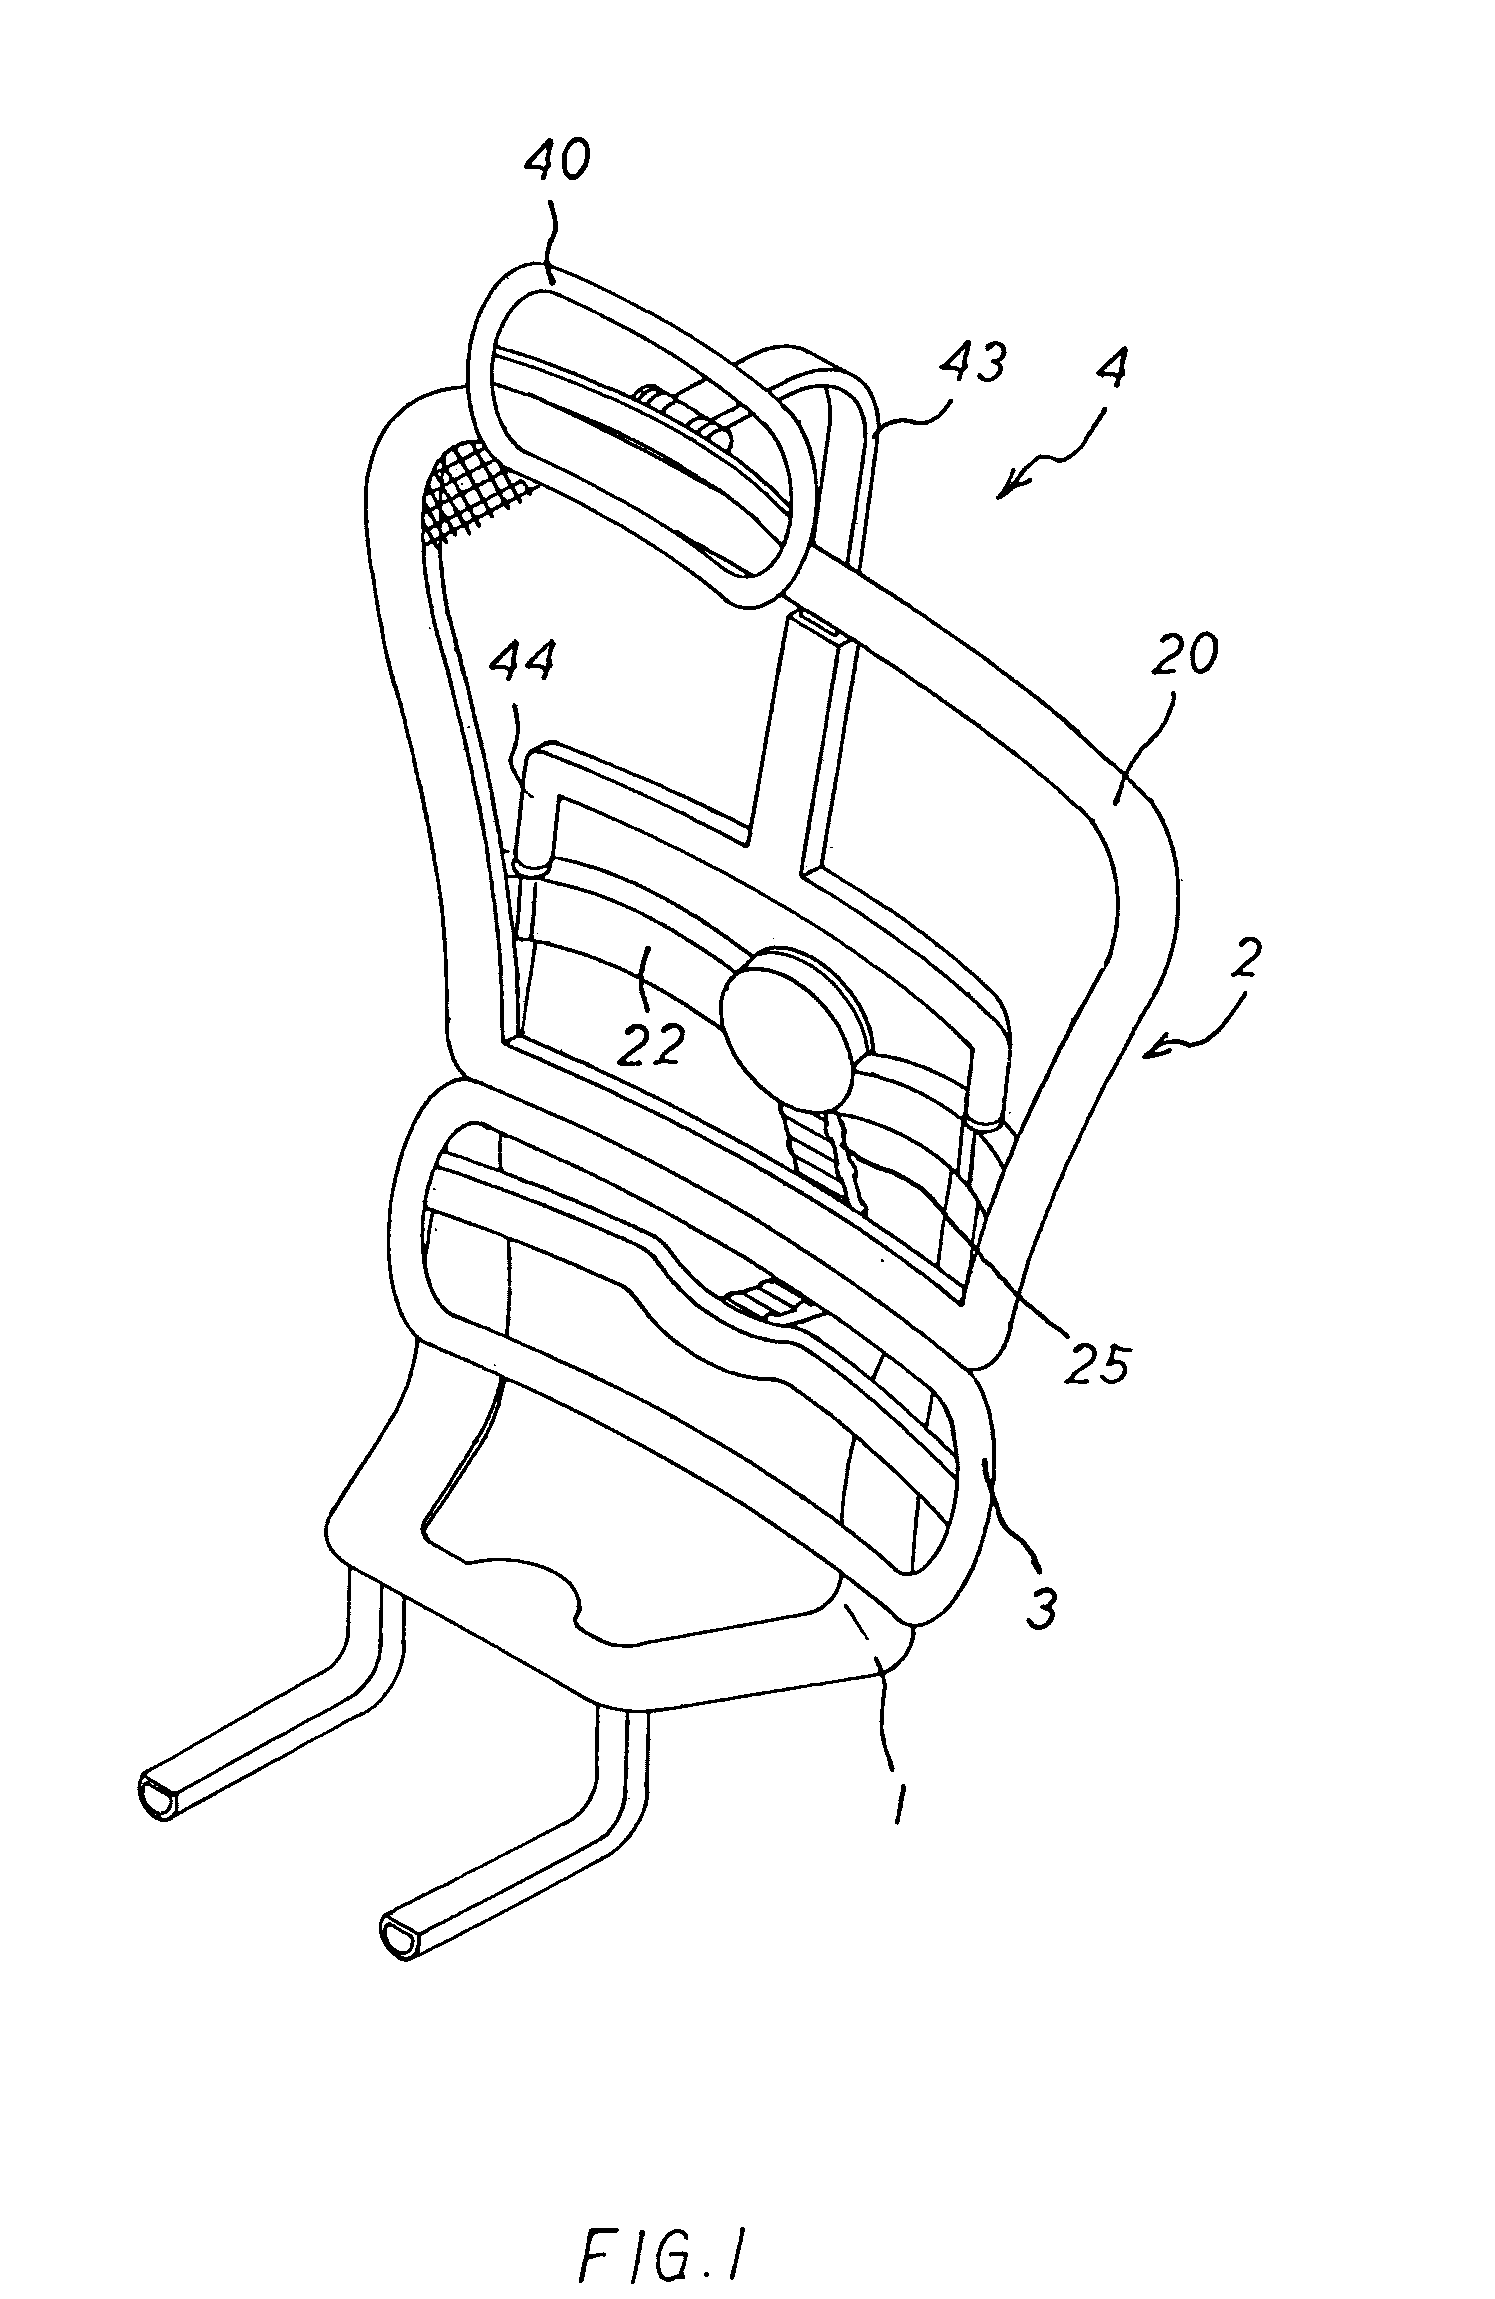 Multi-stage backrest assembly